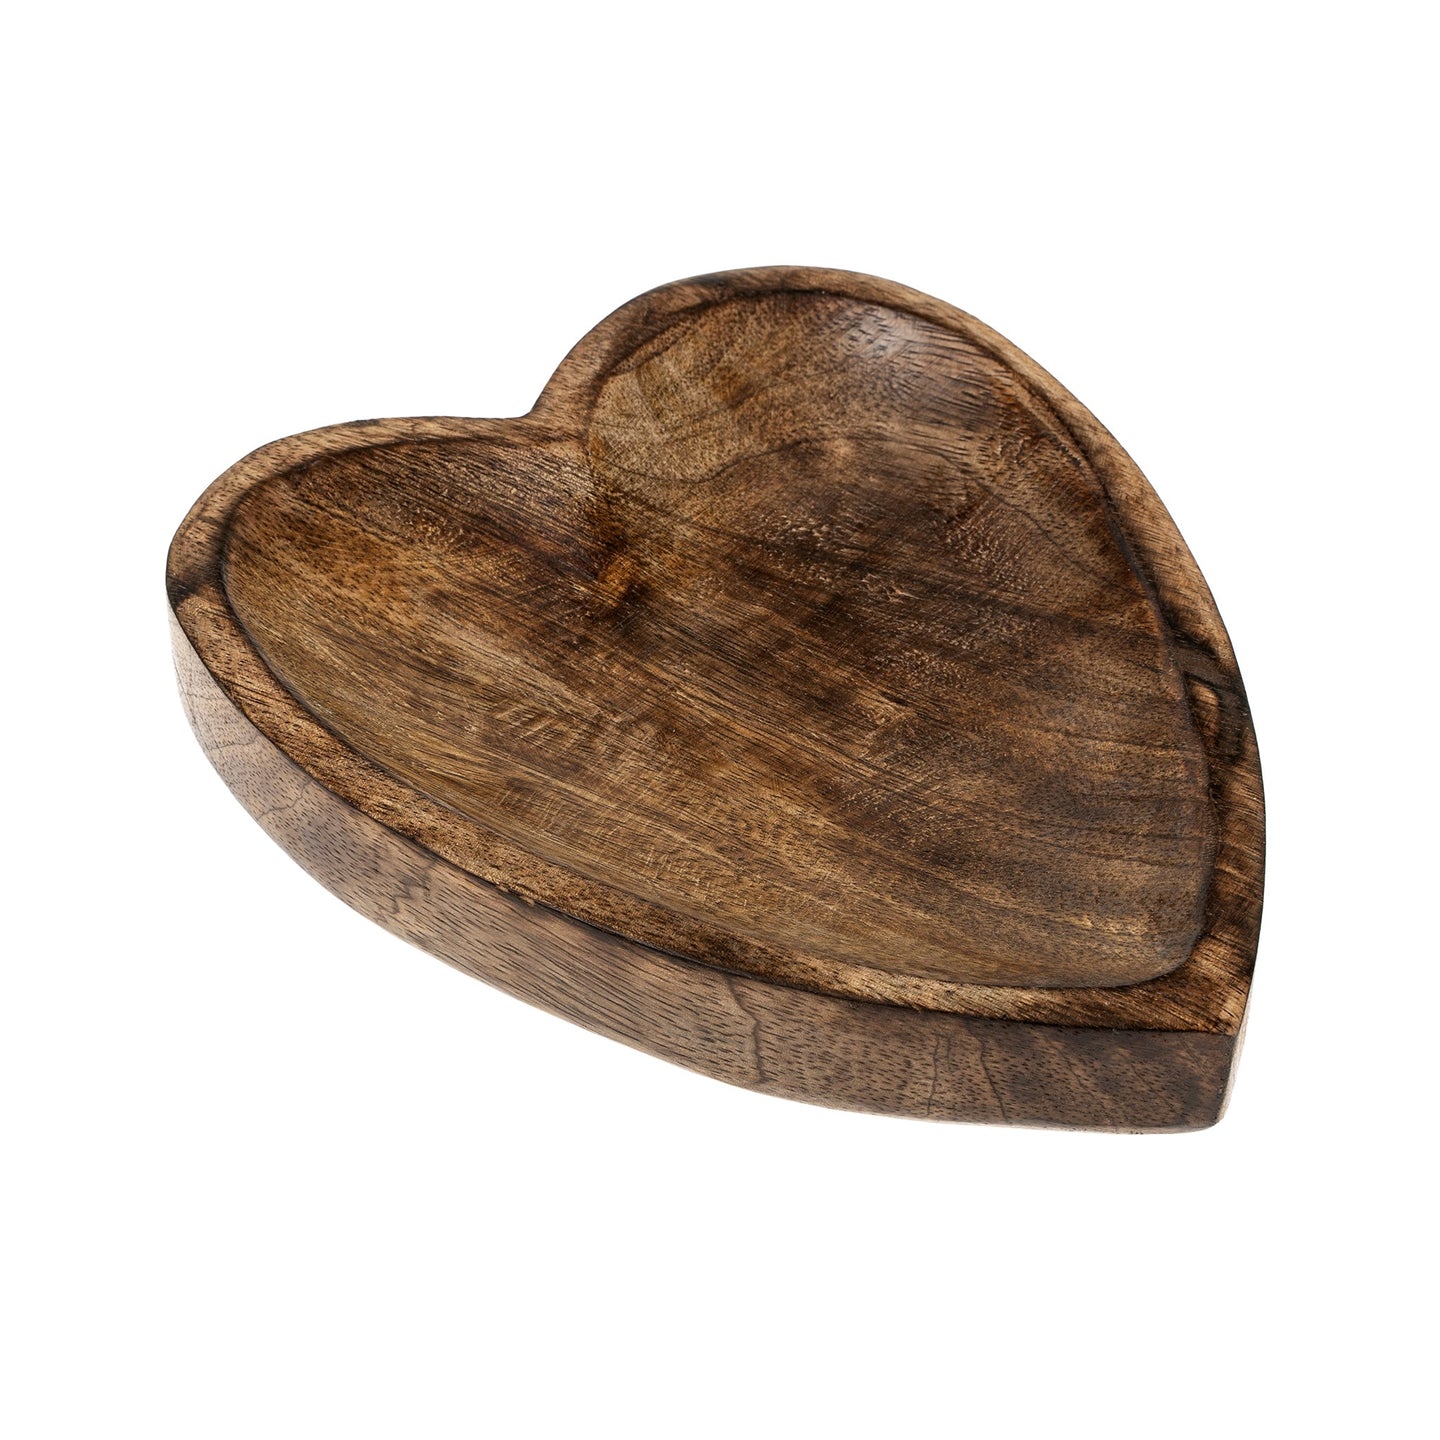 Wooden Heart tray